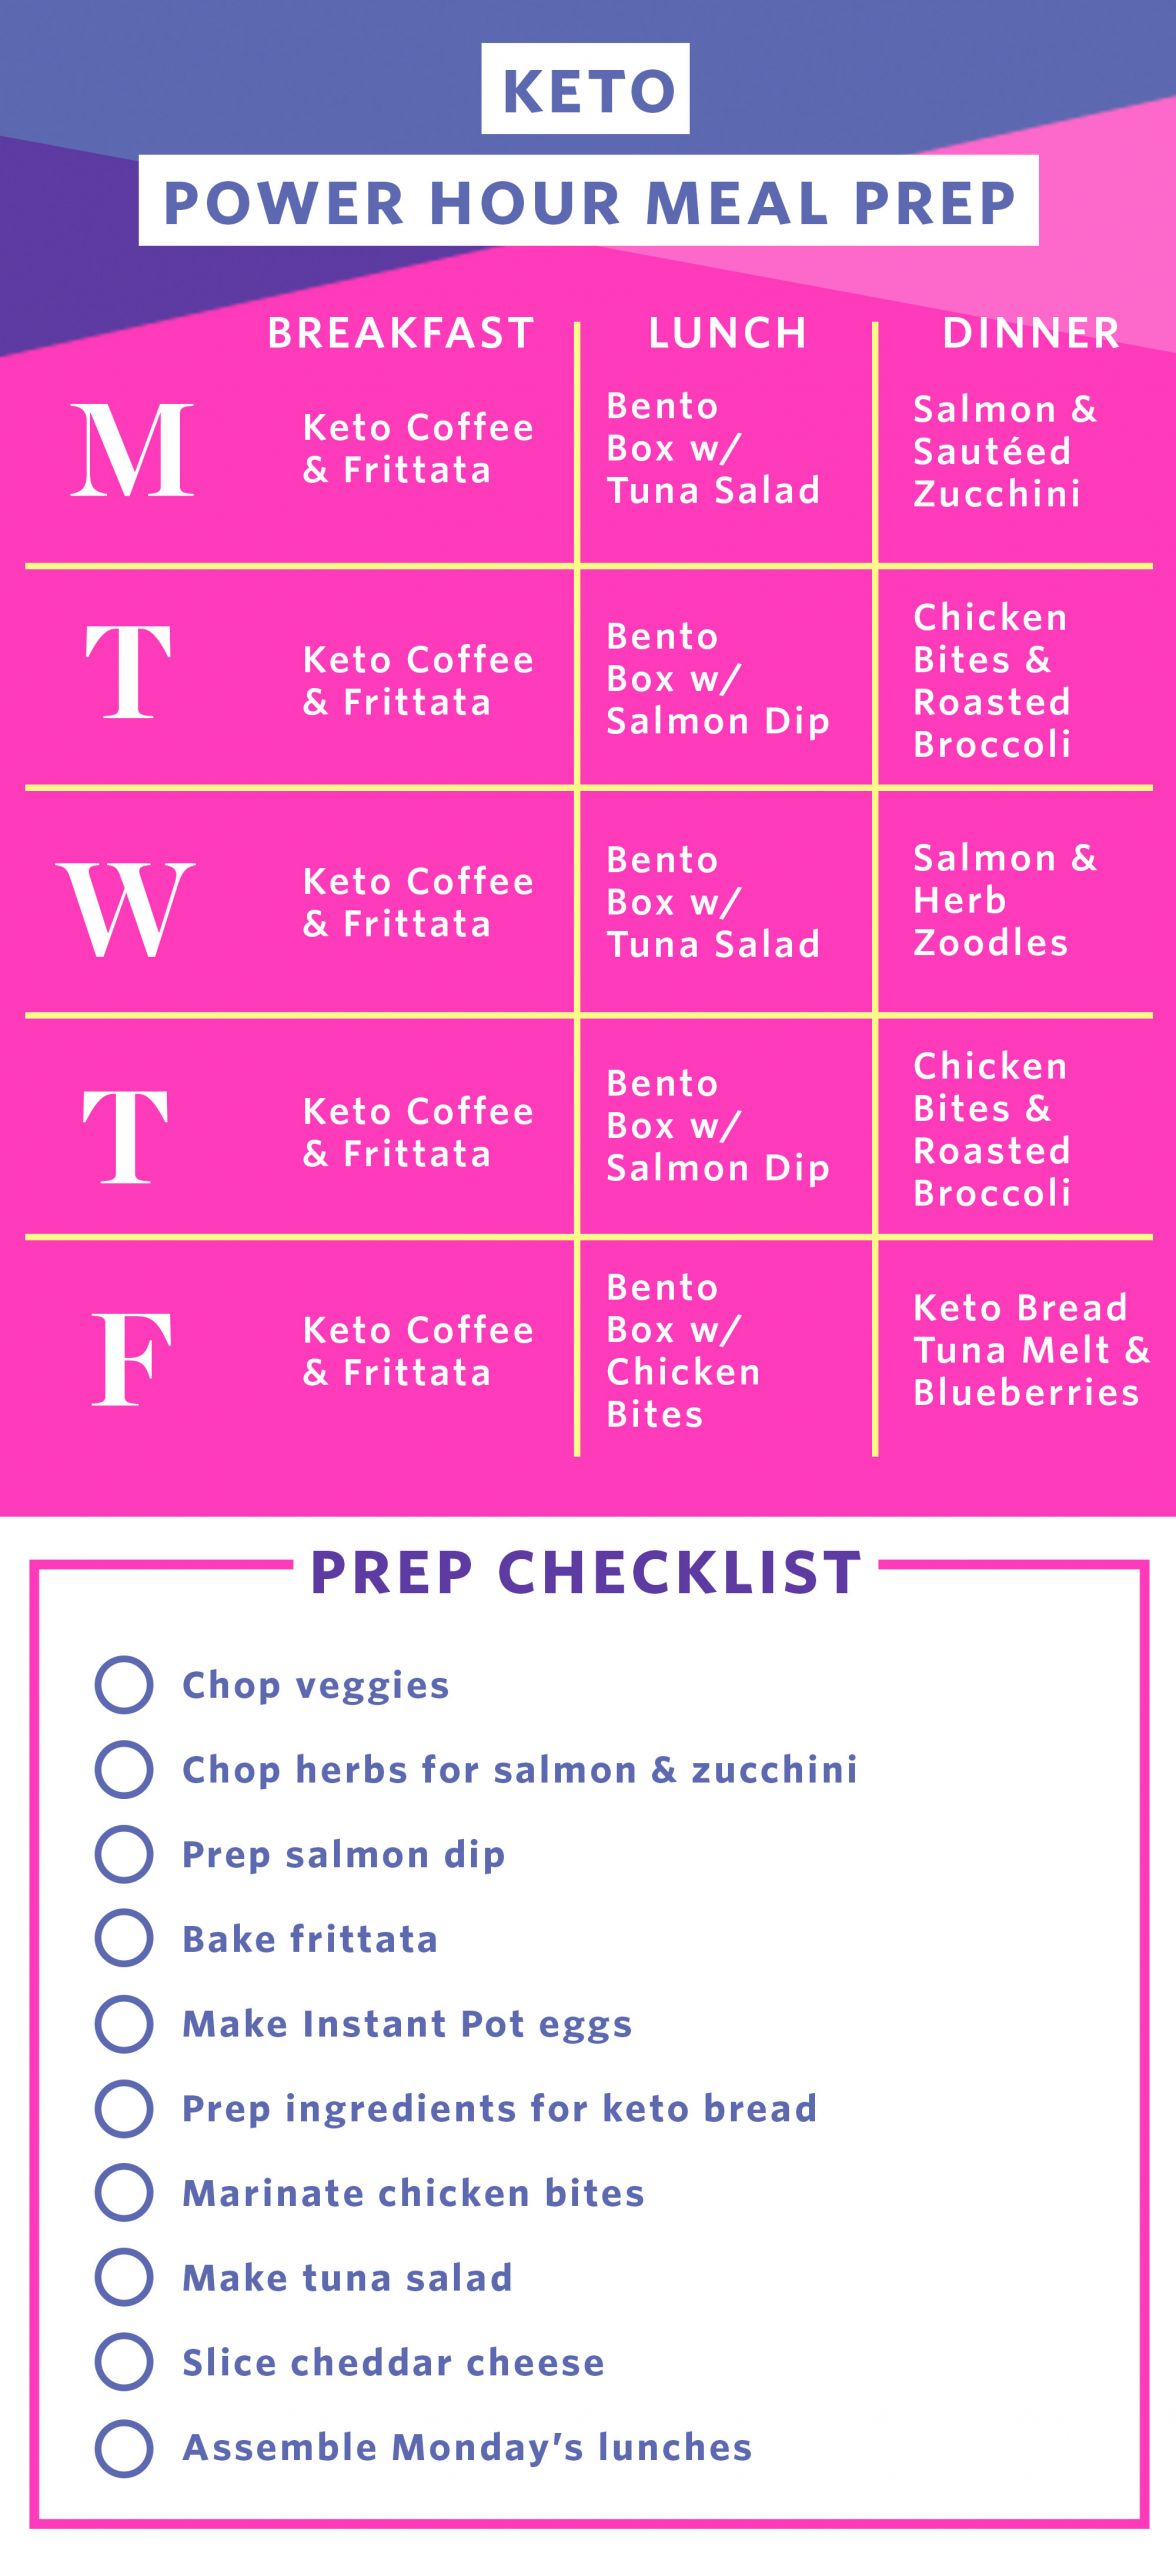 Keto Diet For Beginners Meal Plan Easy
 Best keto t plan for beginners Amy Crenn ktechrebate